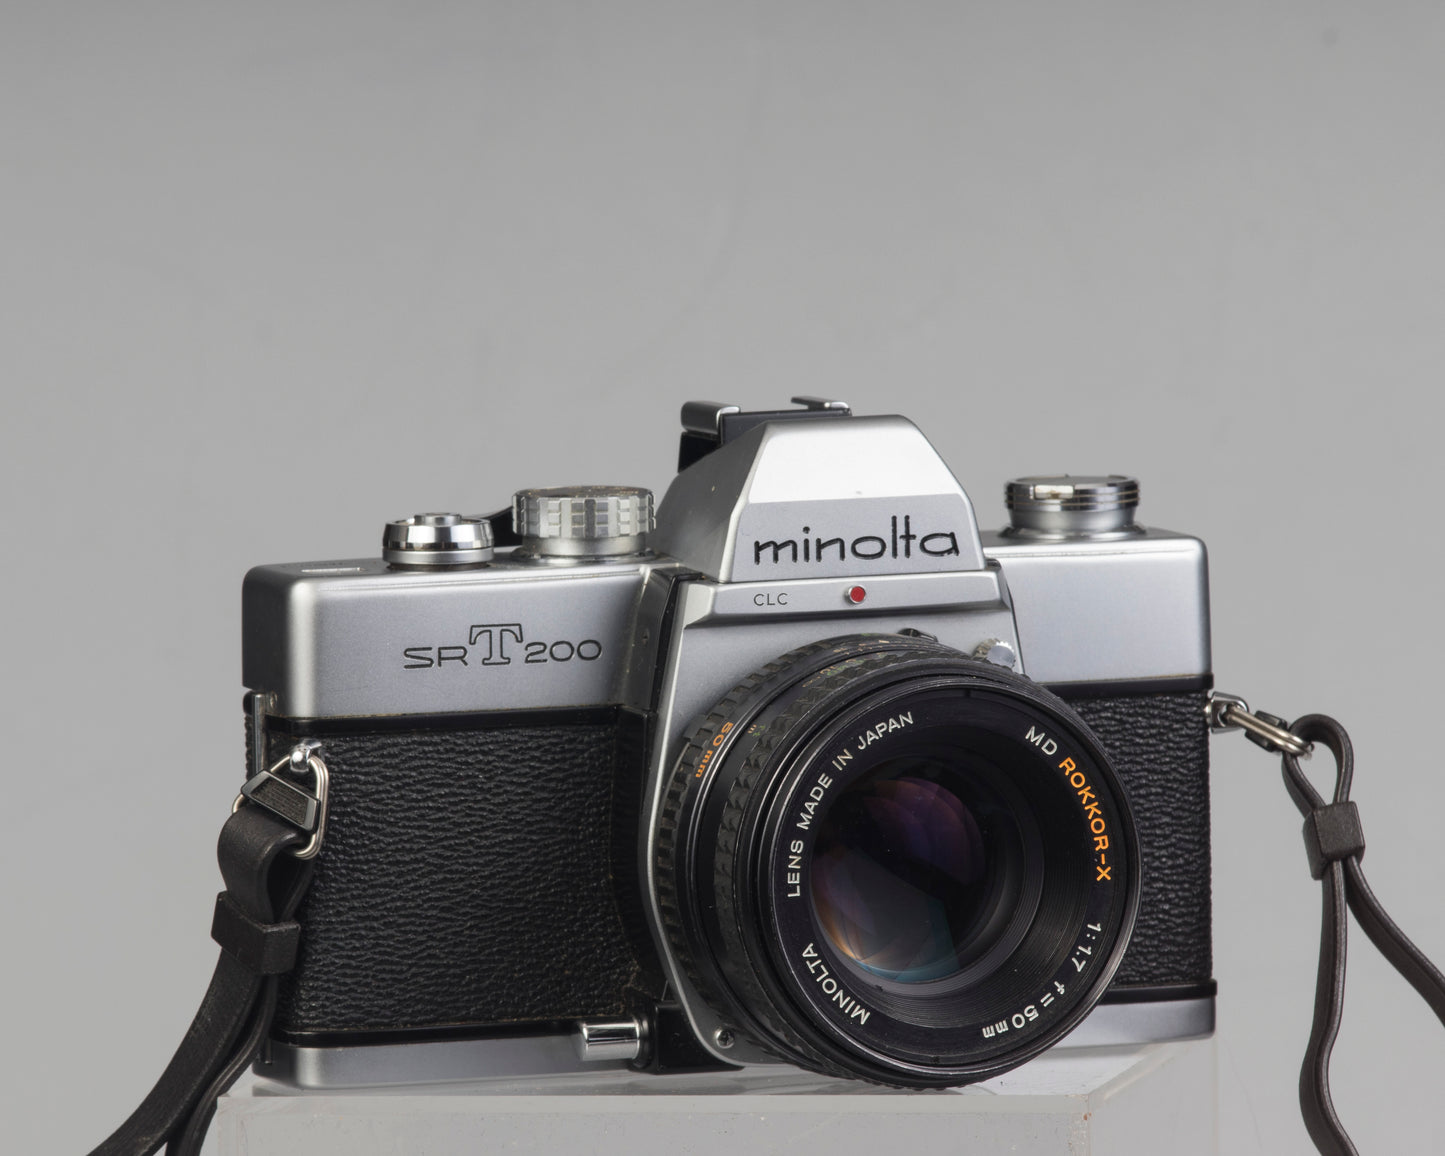 Minolta SRT 200 35mm SLR w/ Rokkor 50mm f1.7 lens